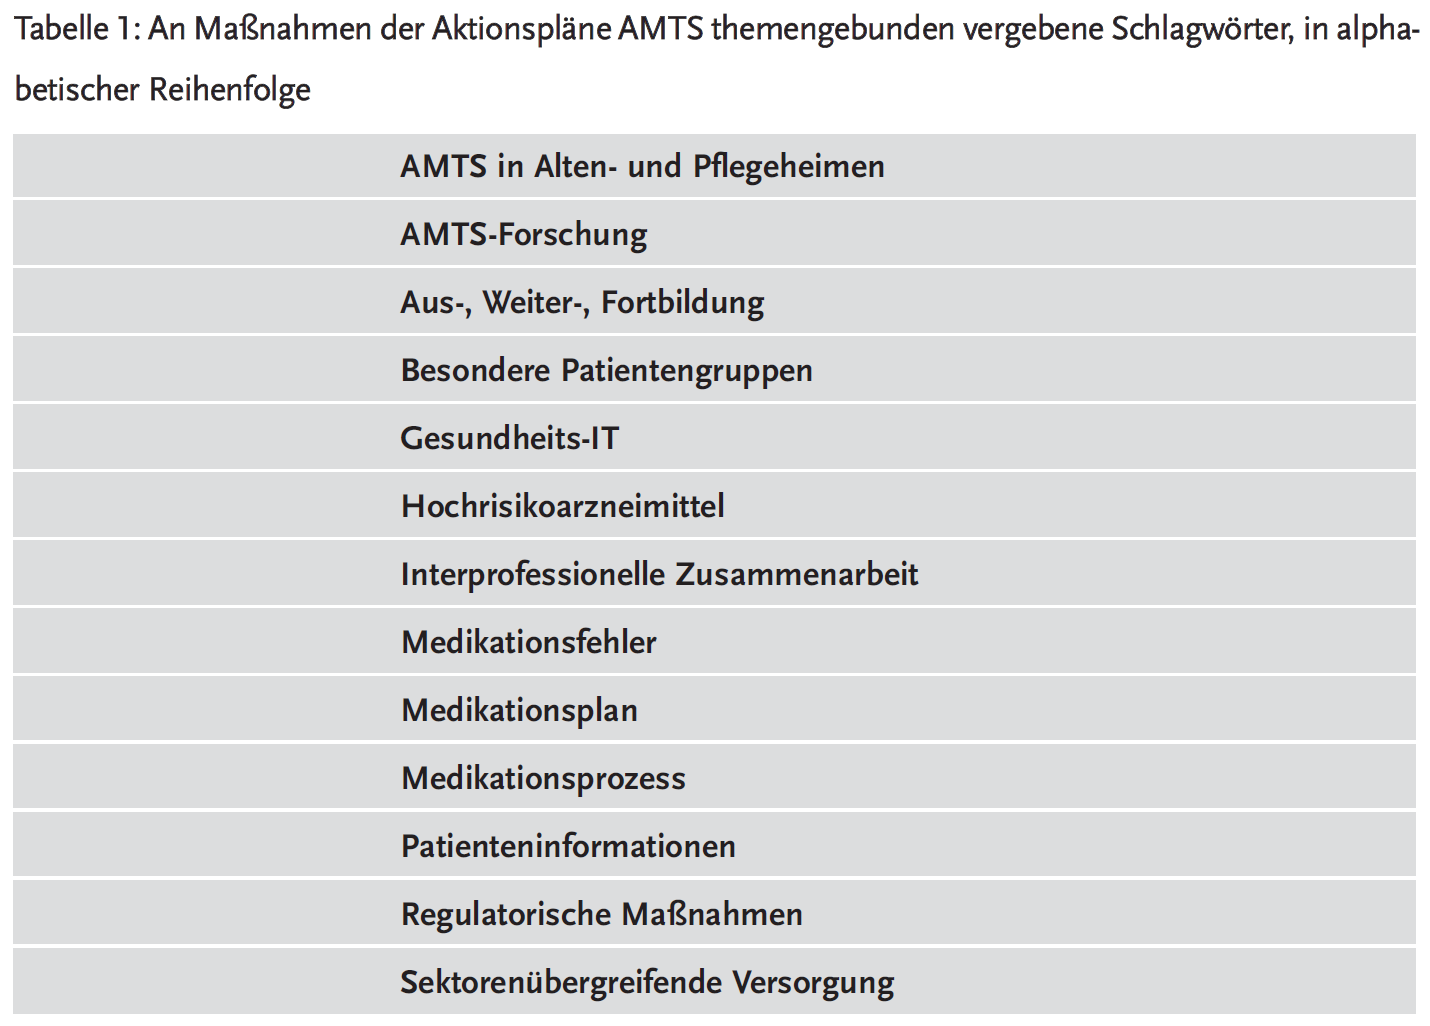 Tabelle 1: An Maßnahmen der Aktionspläne AMTS themengebunden vergebene Schlagwörter, in alphabetischer Reihenfolge